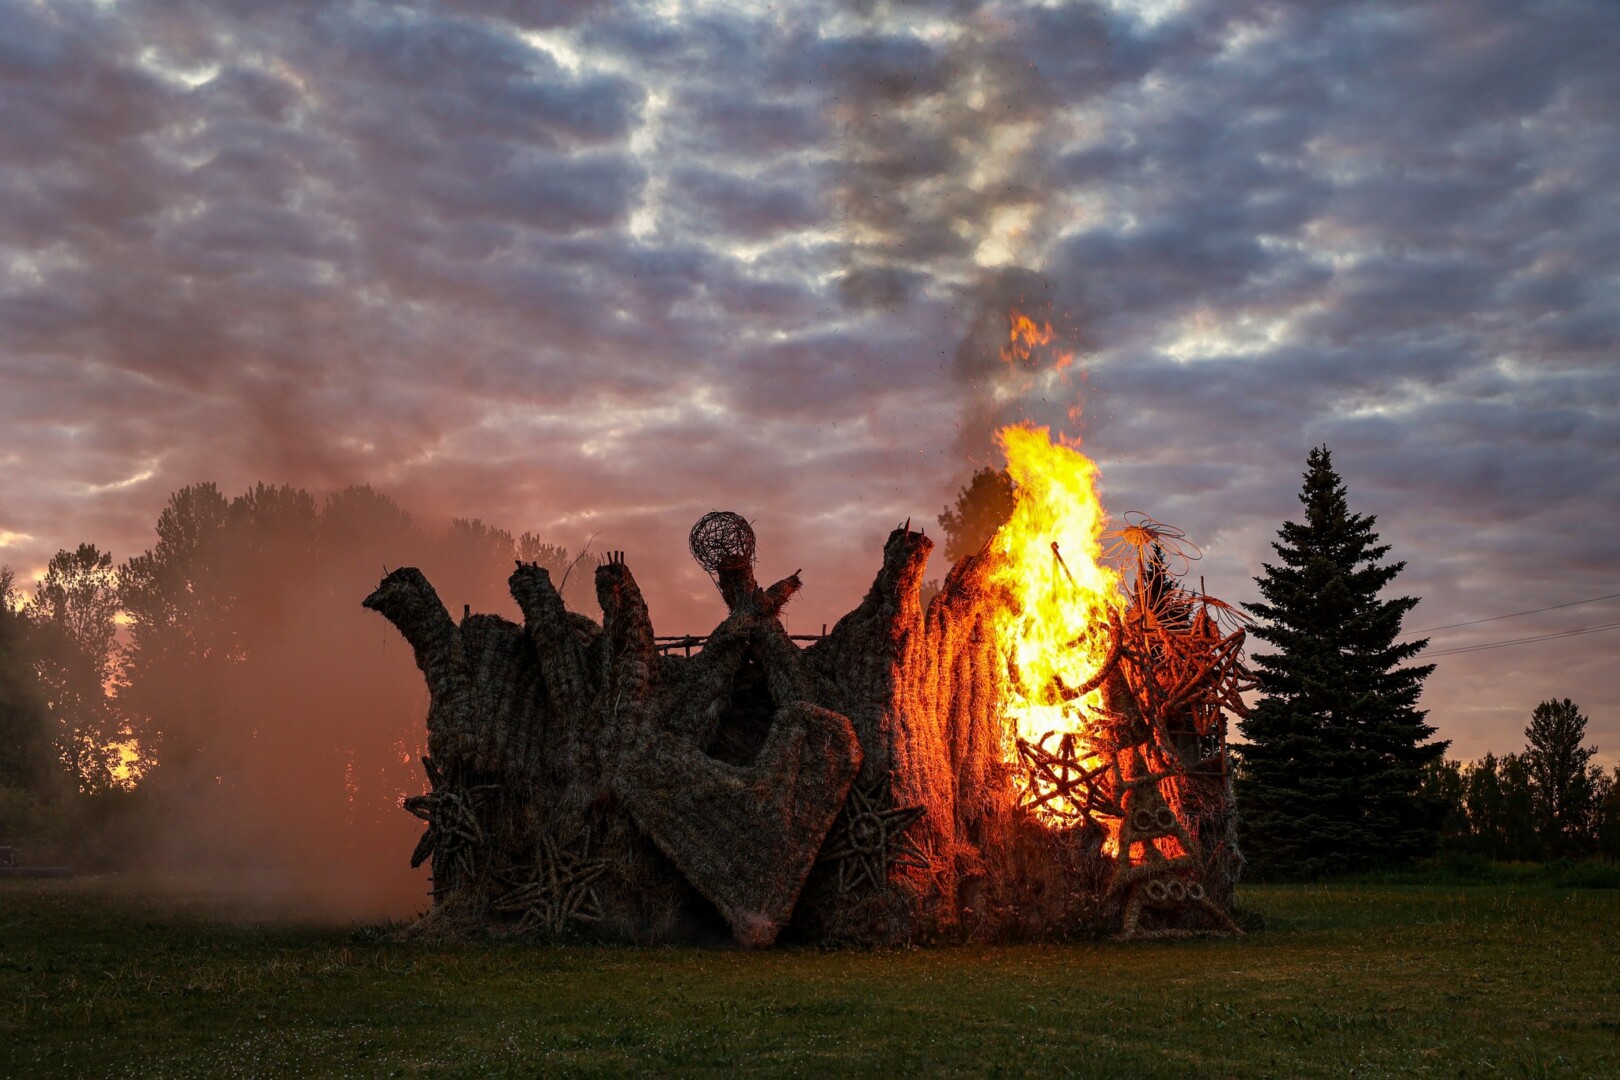 Kone du dešimtmečius Naujamiestį ne tik Lietuvoje, bet ir užsienyje garsinęs įspūdingas šiaudų skulptūrų parkas paleistas dūmais.